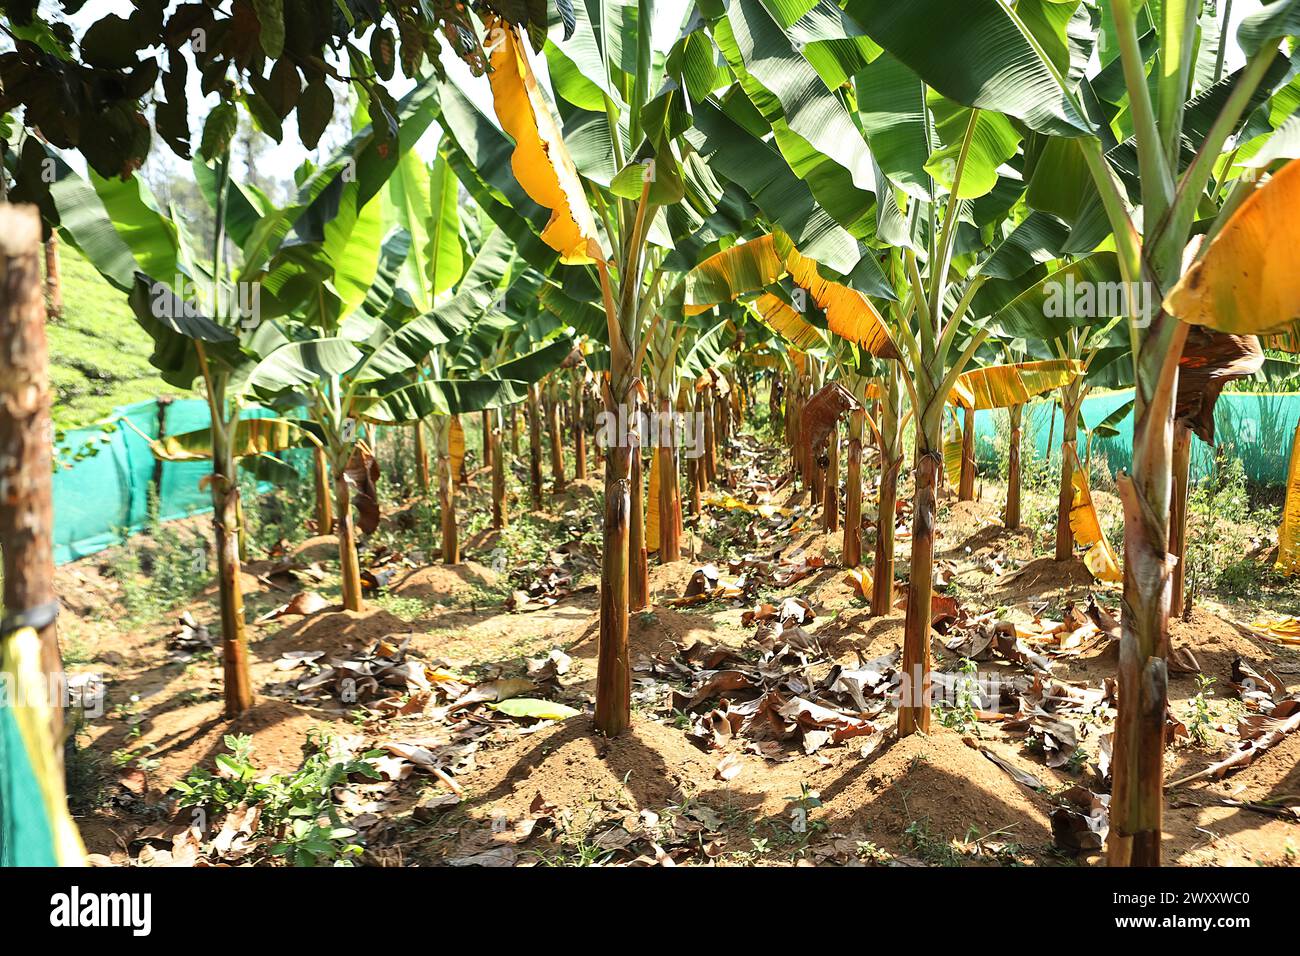 Bananenbaum hinterlässt Ein detailreiches Nahfoto, das die leuchtend grüne Textur und die Linien eines Bananenblattes zeigt und natürliche Muster unterstreicht Stockfoto